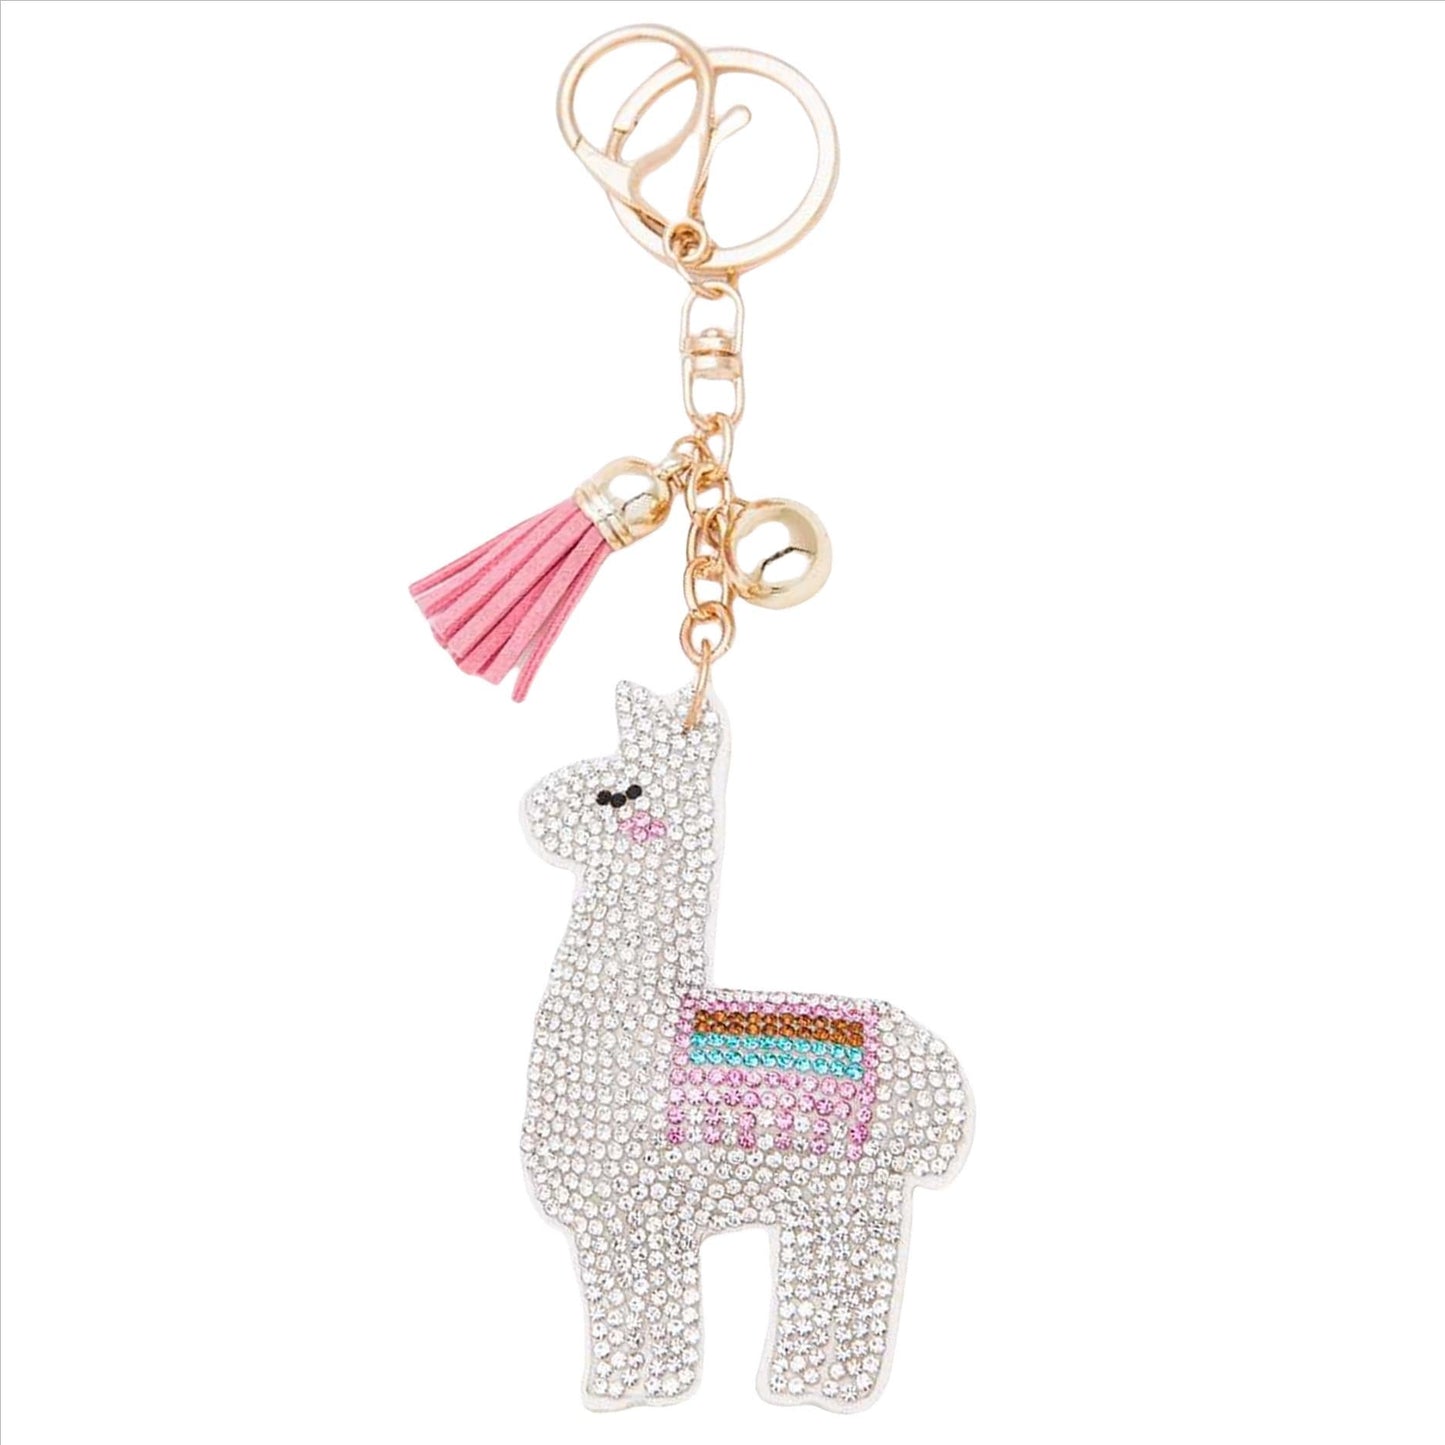 Llama Crystal Puffy Keychain Purse Charm